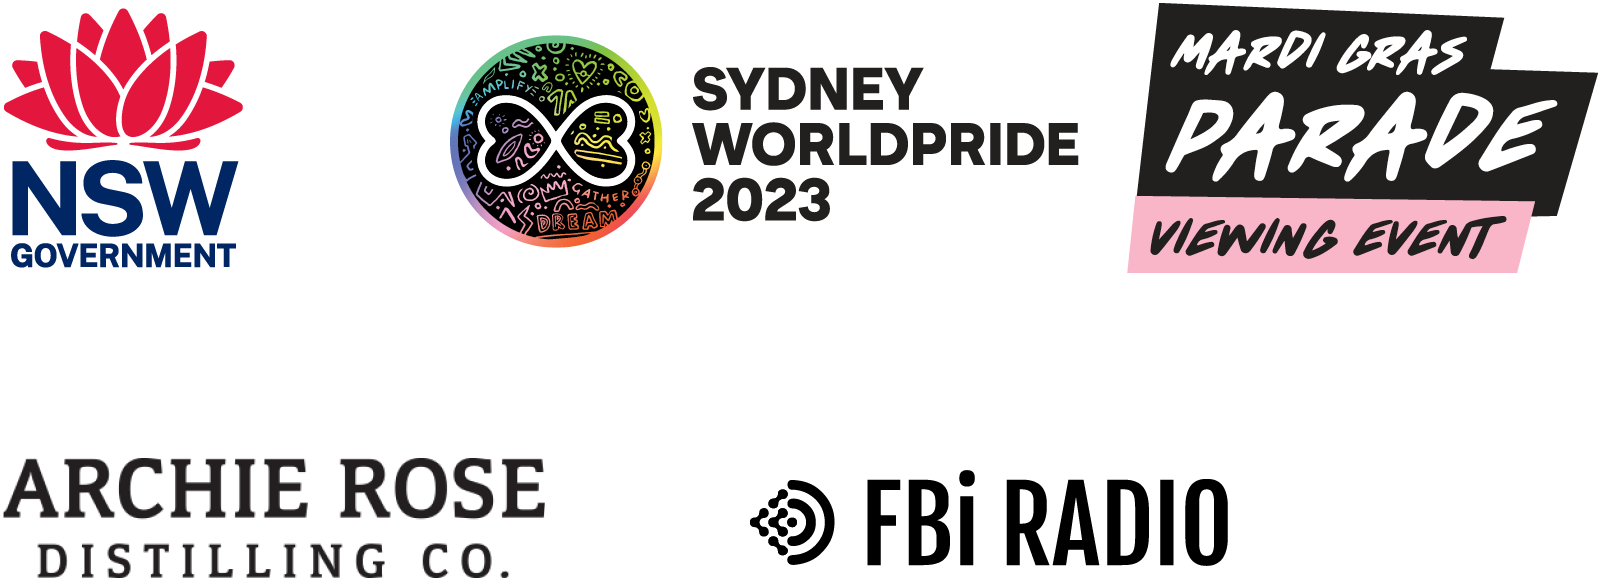 Sydney WorldPride